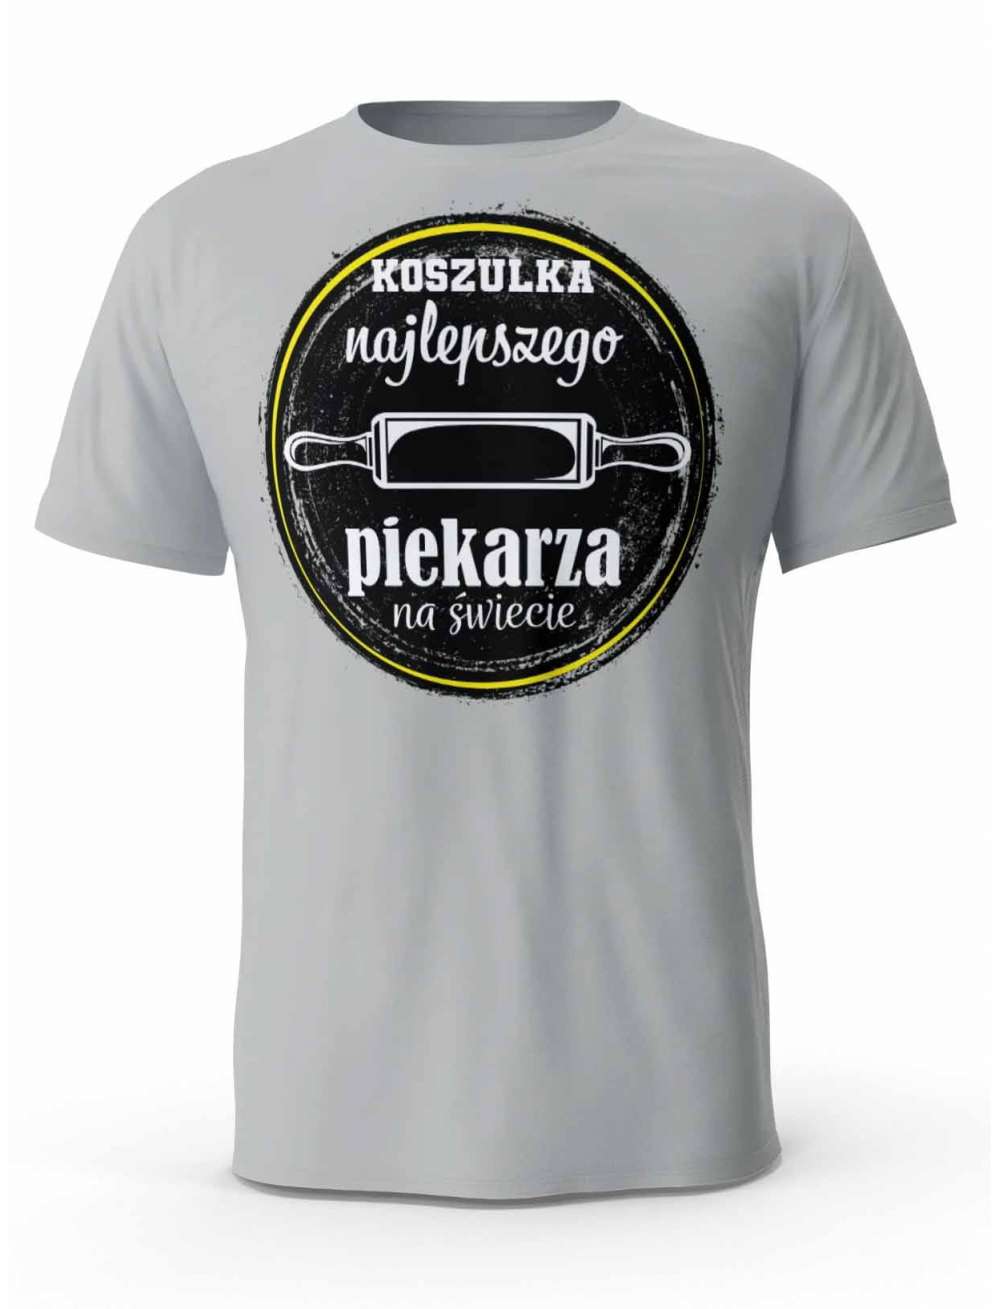 Koszulka Najlepszego Piekarza, T-shirt Męski, Prezent